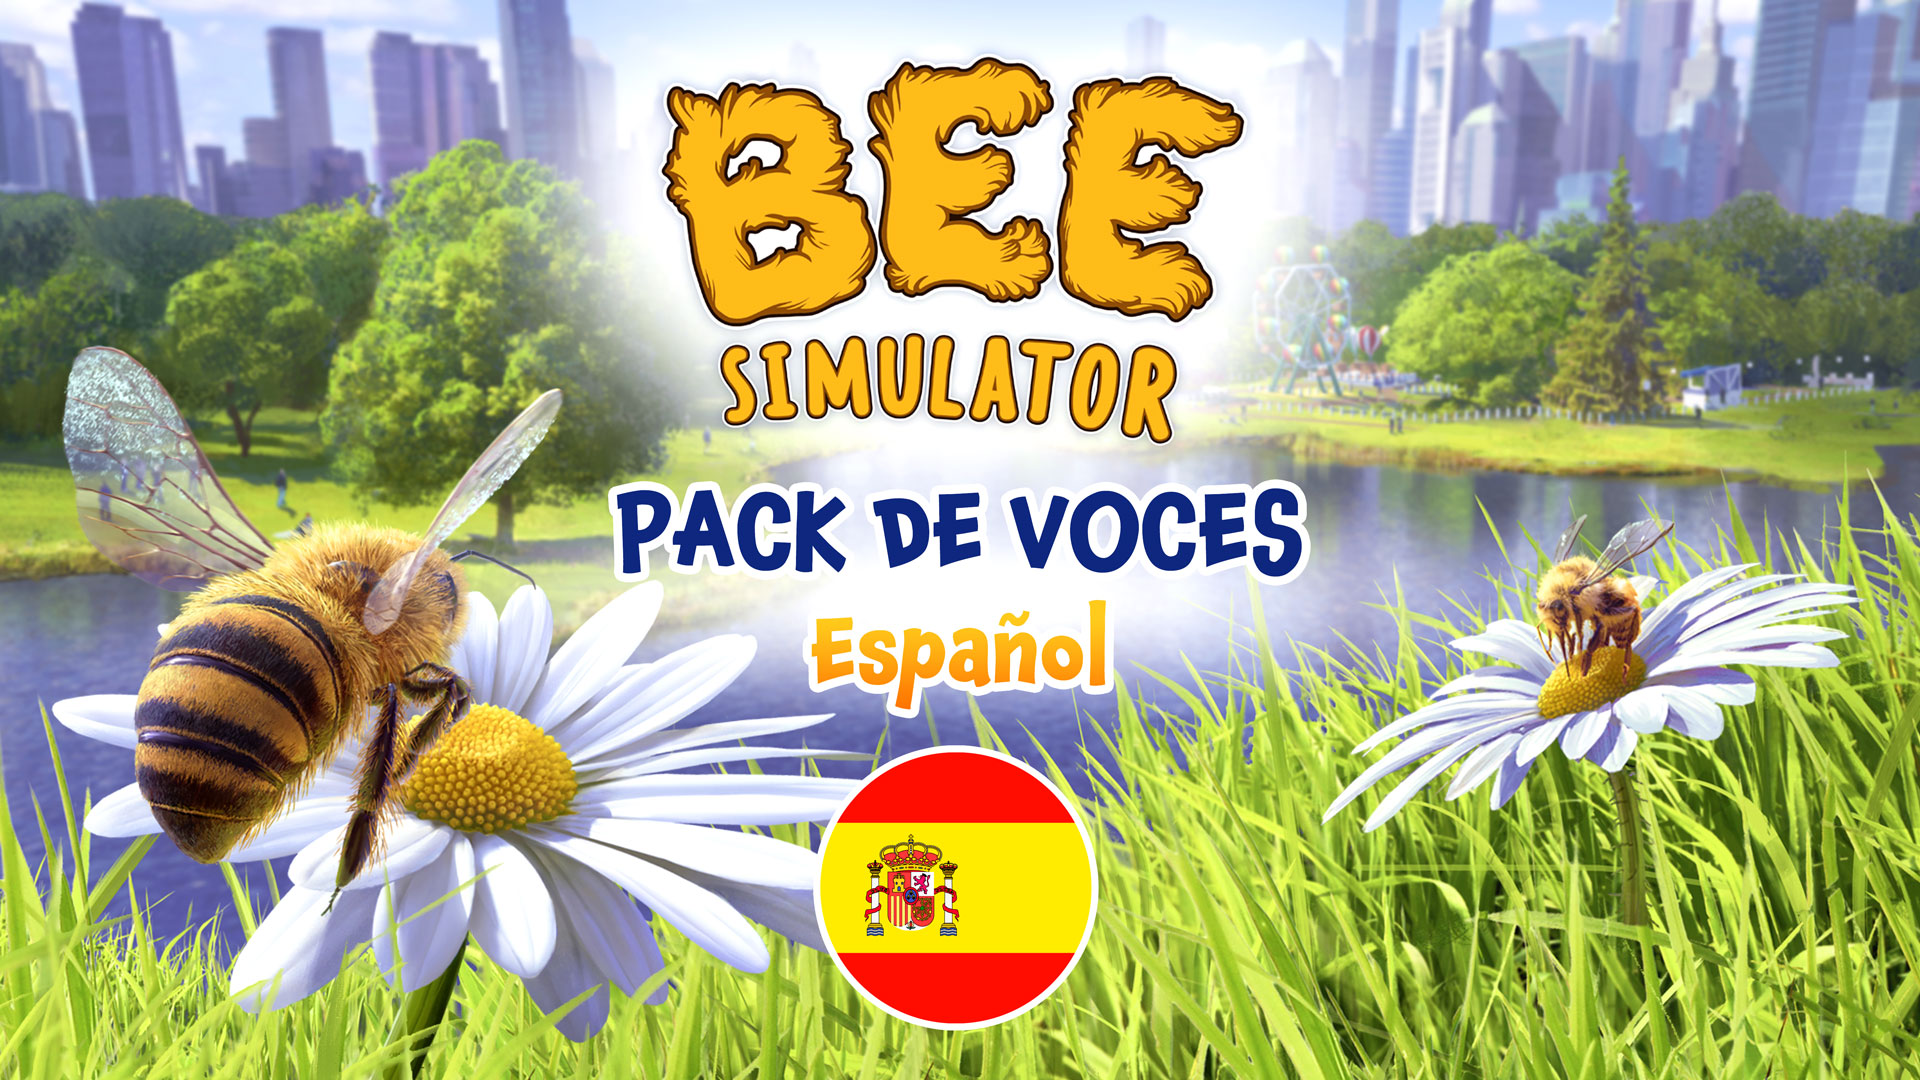 Bee Simulator Pack de voces - Español